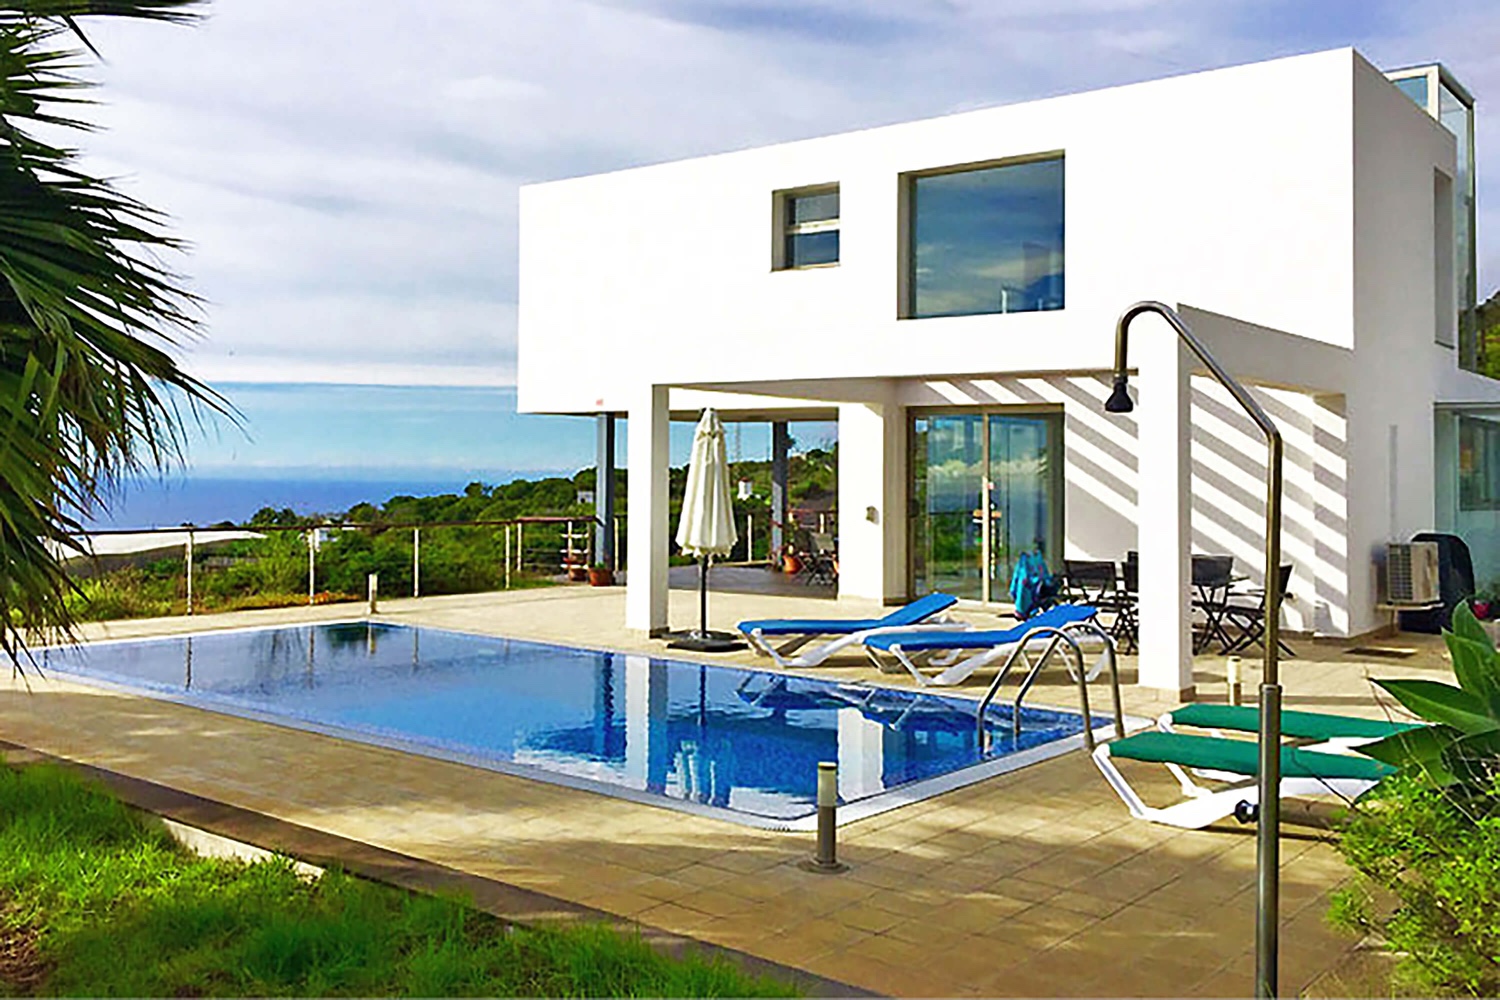 Luksuriøst feriehus til leie på La Palma med moderne arkitektur med stort basseng og vakker panoramautsikt over havet